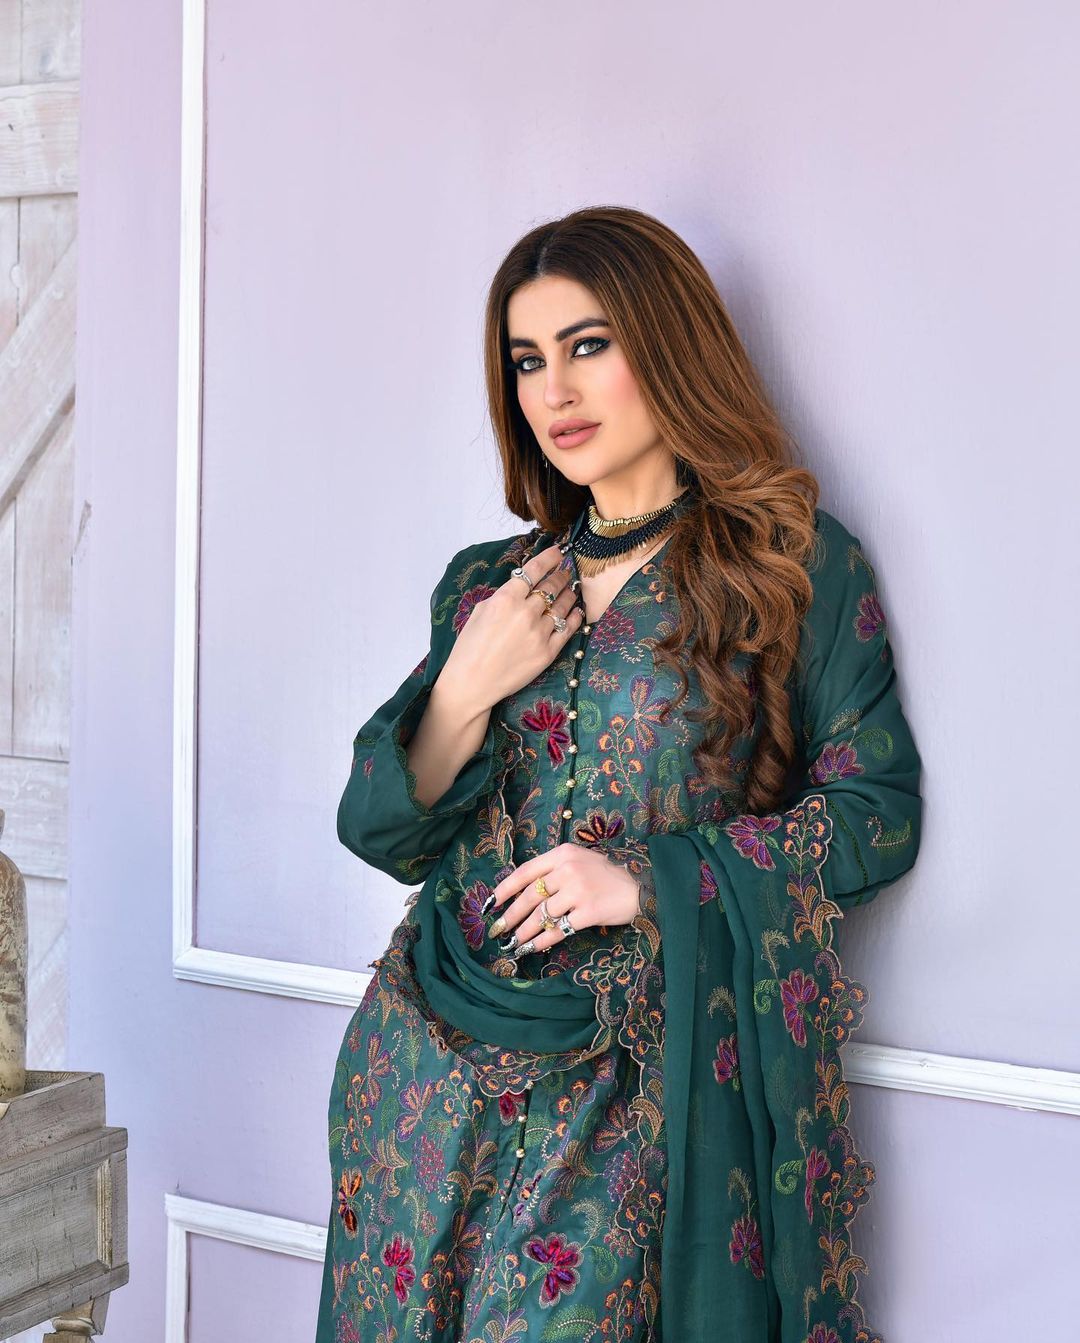 Zoyaa Khan looks Stunning in Stylish Traditional Attire, (PHOTOS)